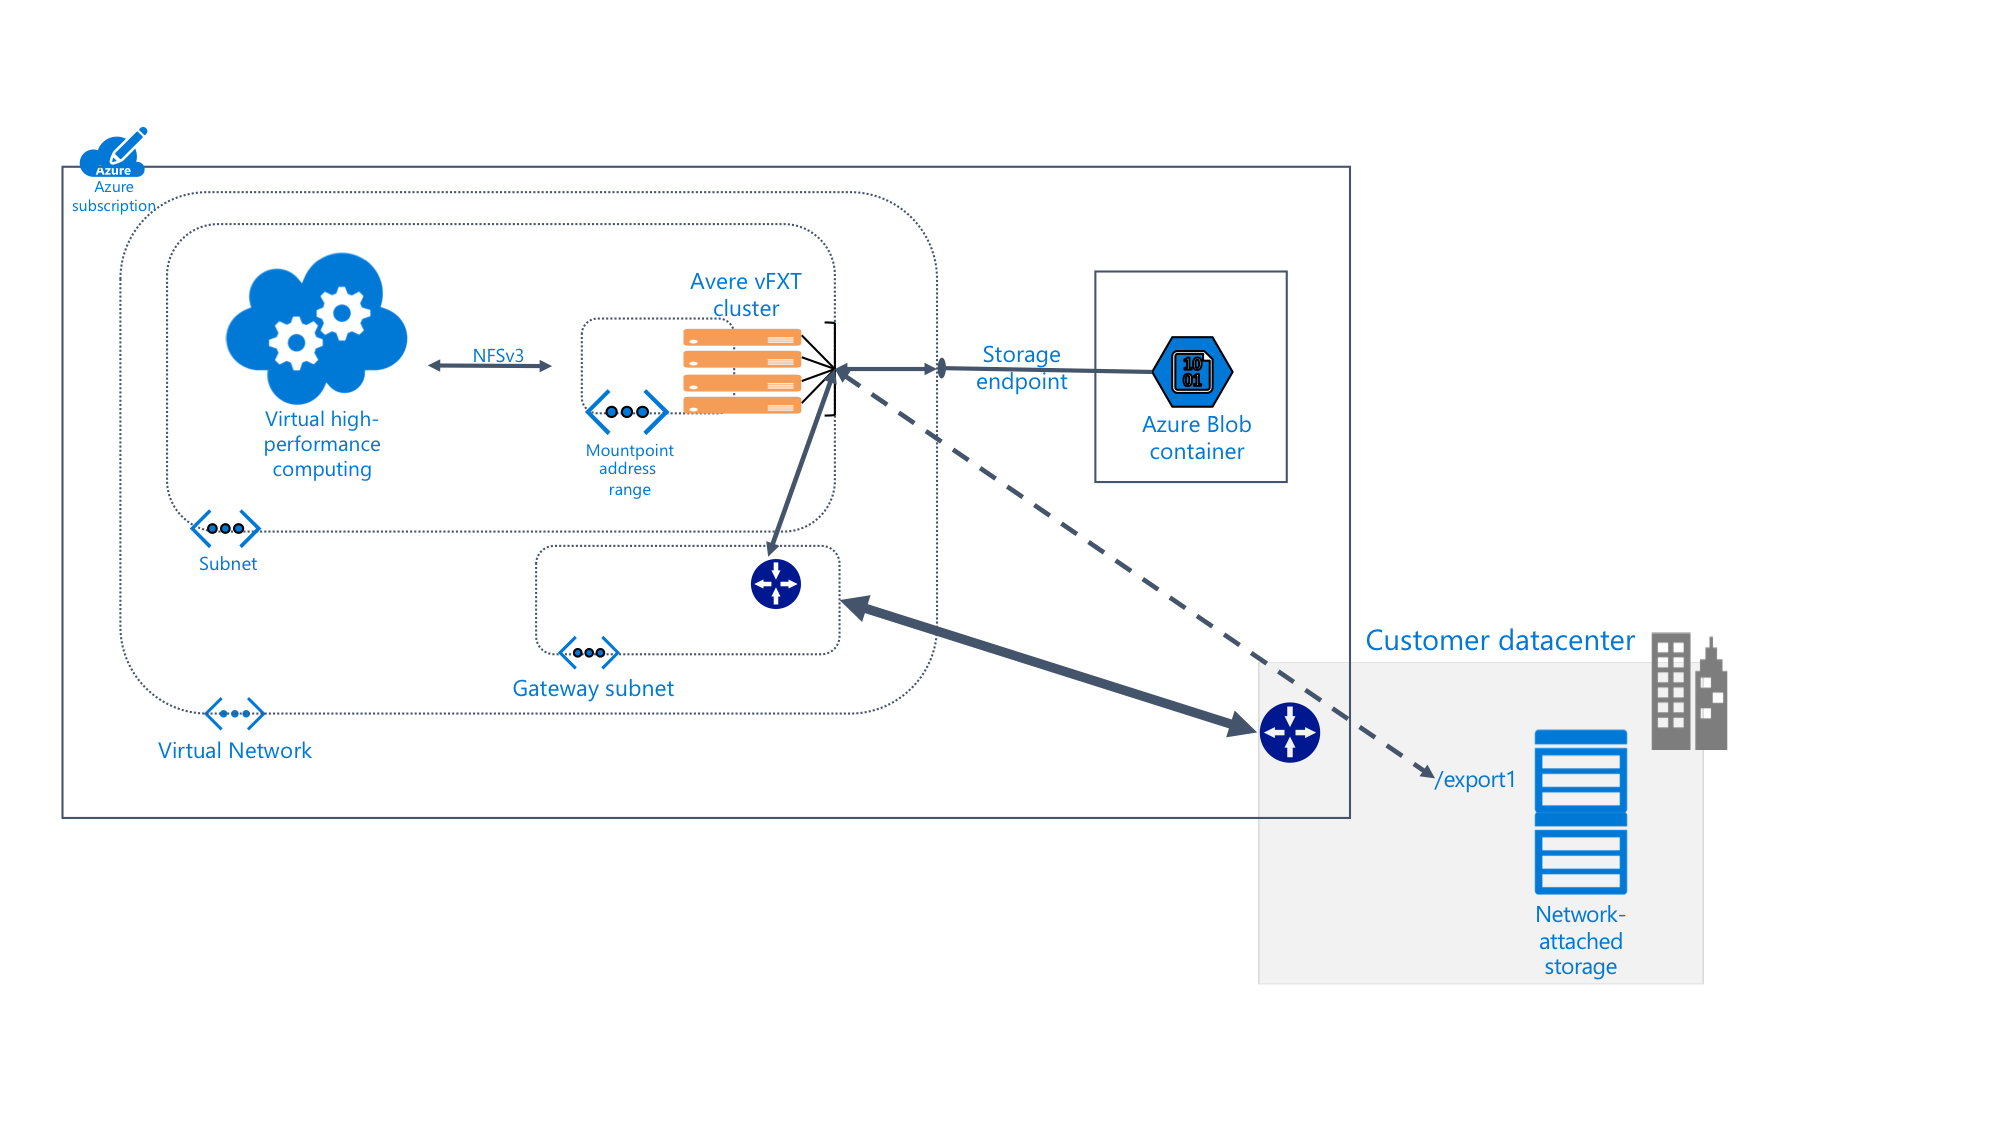 Схема, где подробно показана система Avere vFXT внутри подписки Azure, подключенная к хранилищу BLOB-объектов и к локальному центру обработки данных